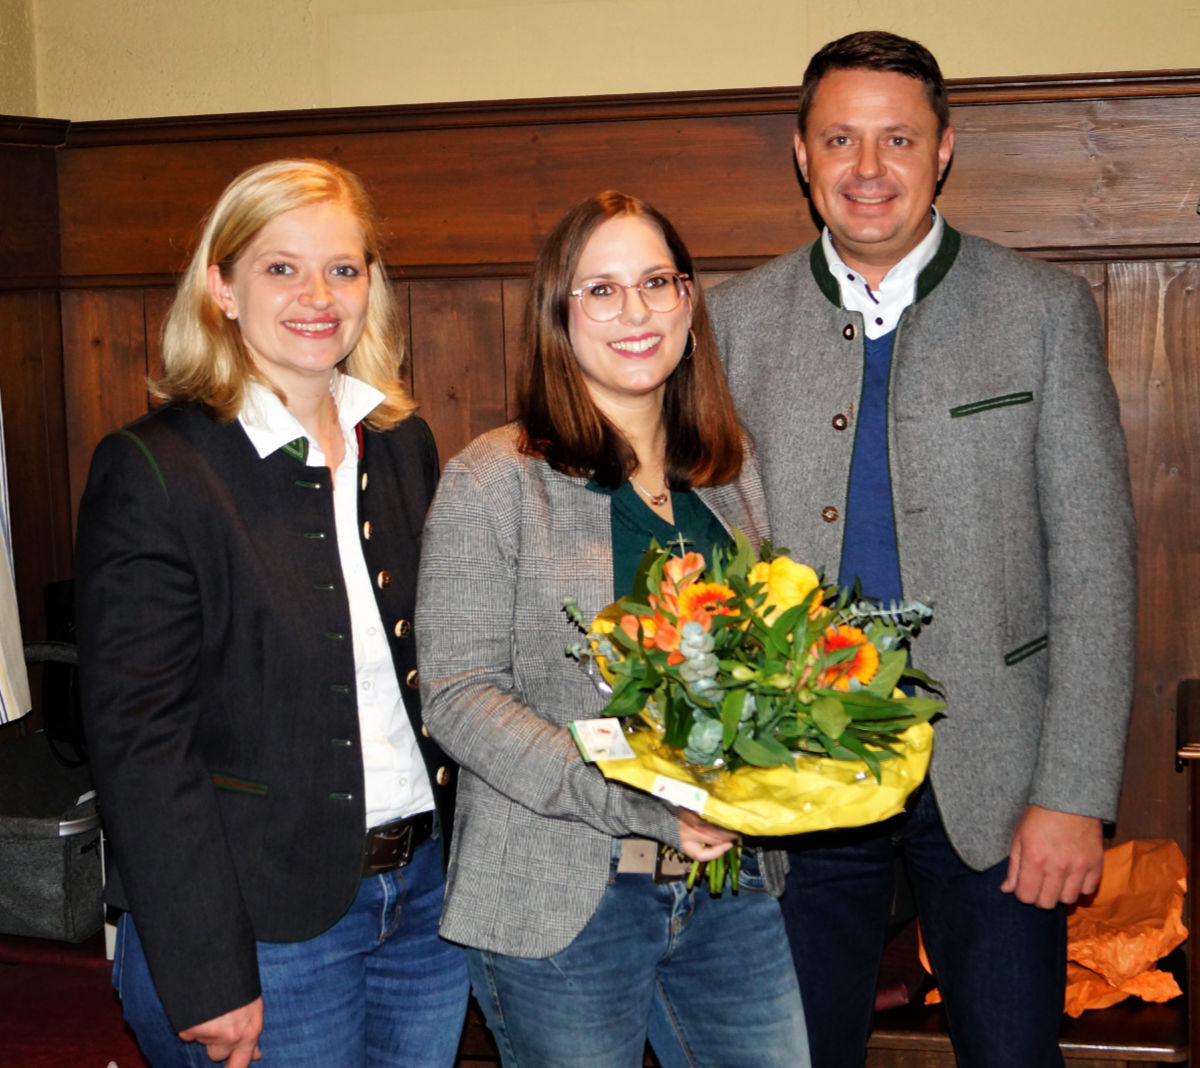 Ortsvorsitzende Anita Niederstraßer (links) und Landratskandidat Michaeel Koller (rechts) gratulierten Sabrina Stutz zur Nominierung als Bürgermeister-Kandidatin